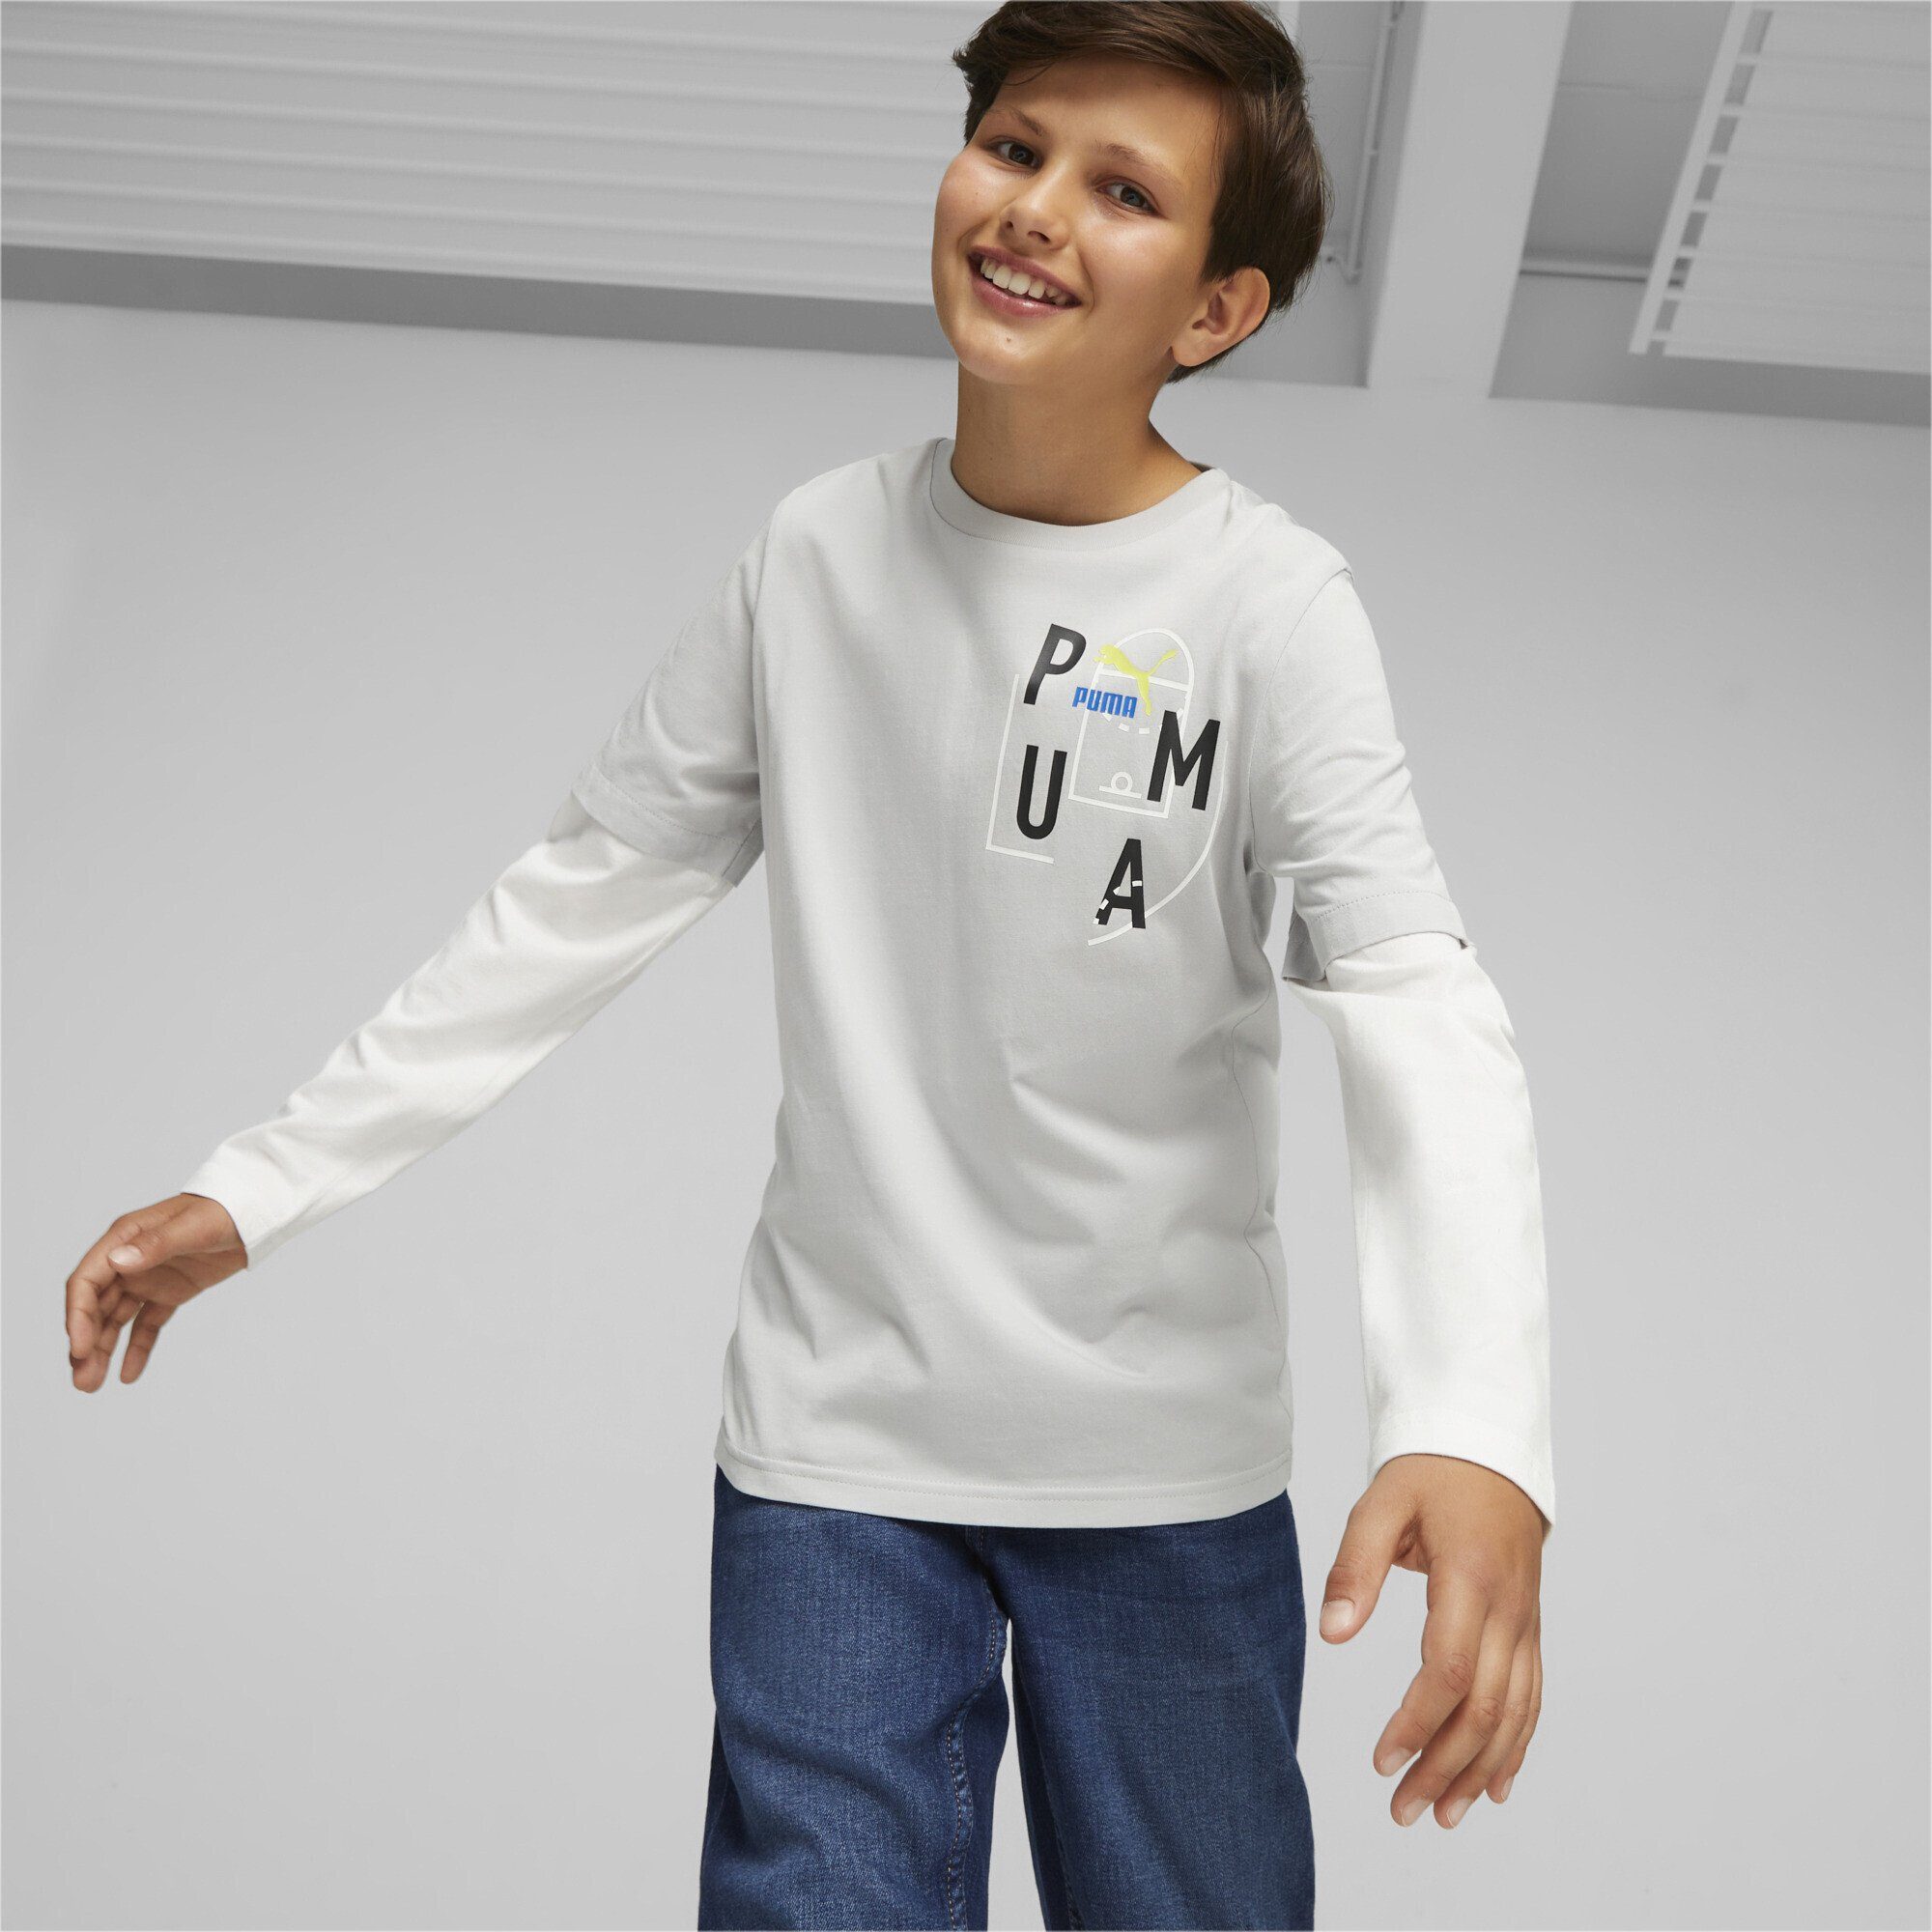 Classics Jugendliche T-Shirt Gray Langarmshirt FTR Ash PUMA Baller